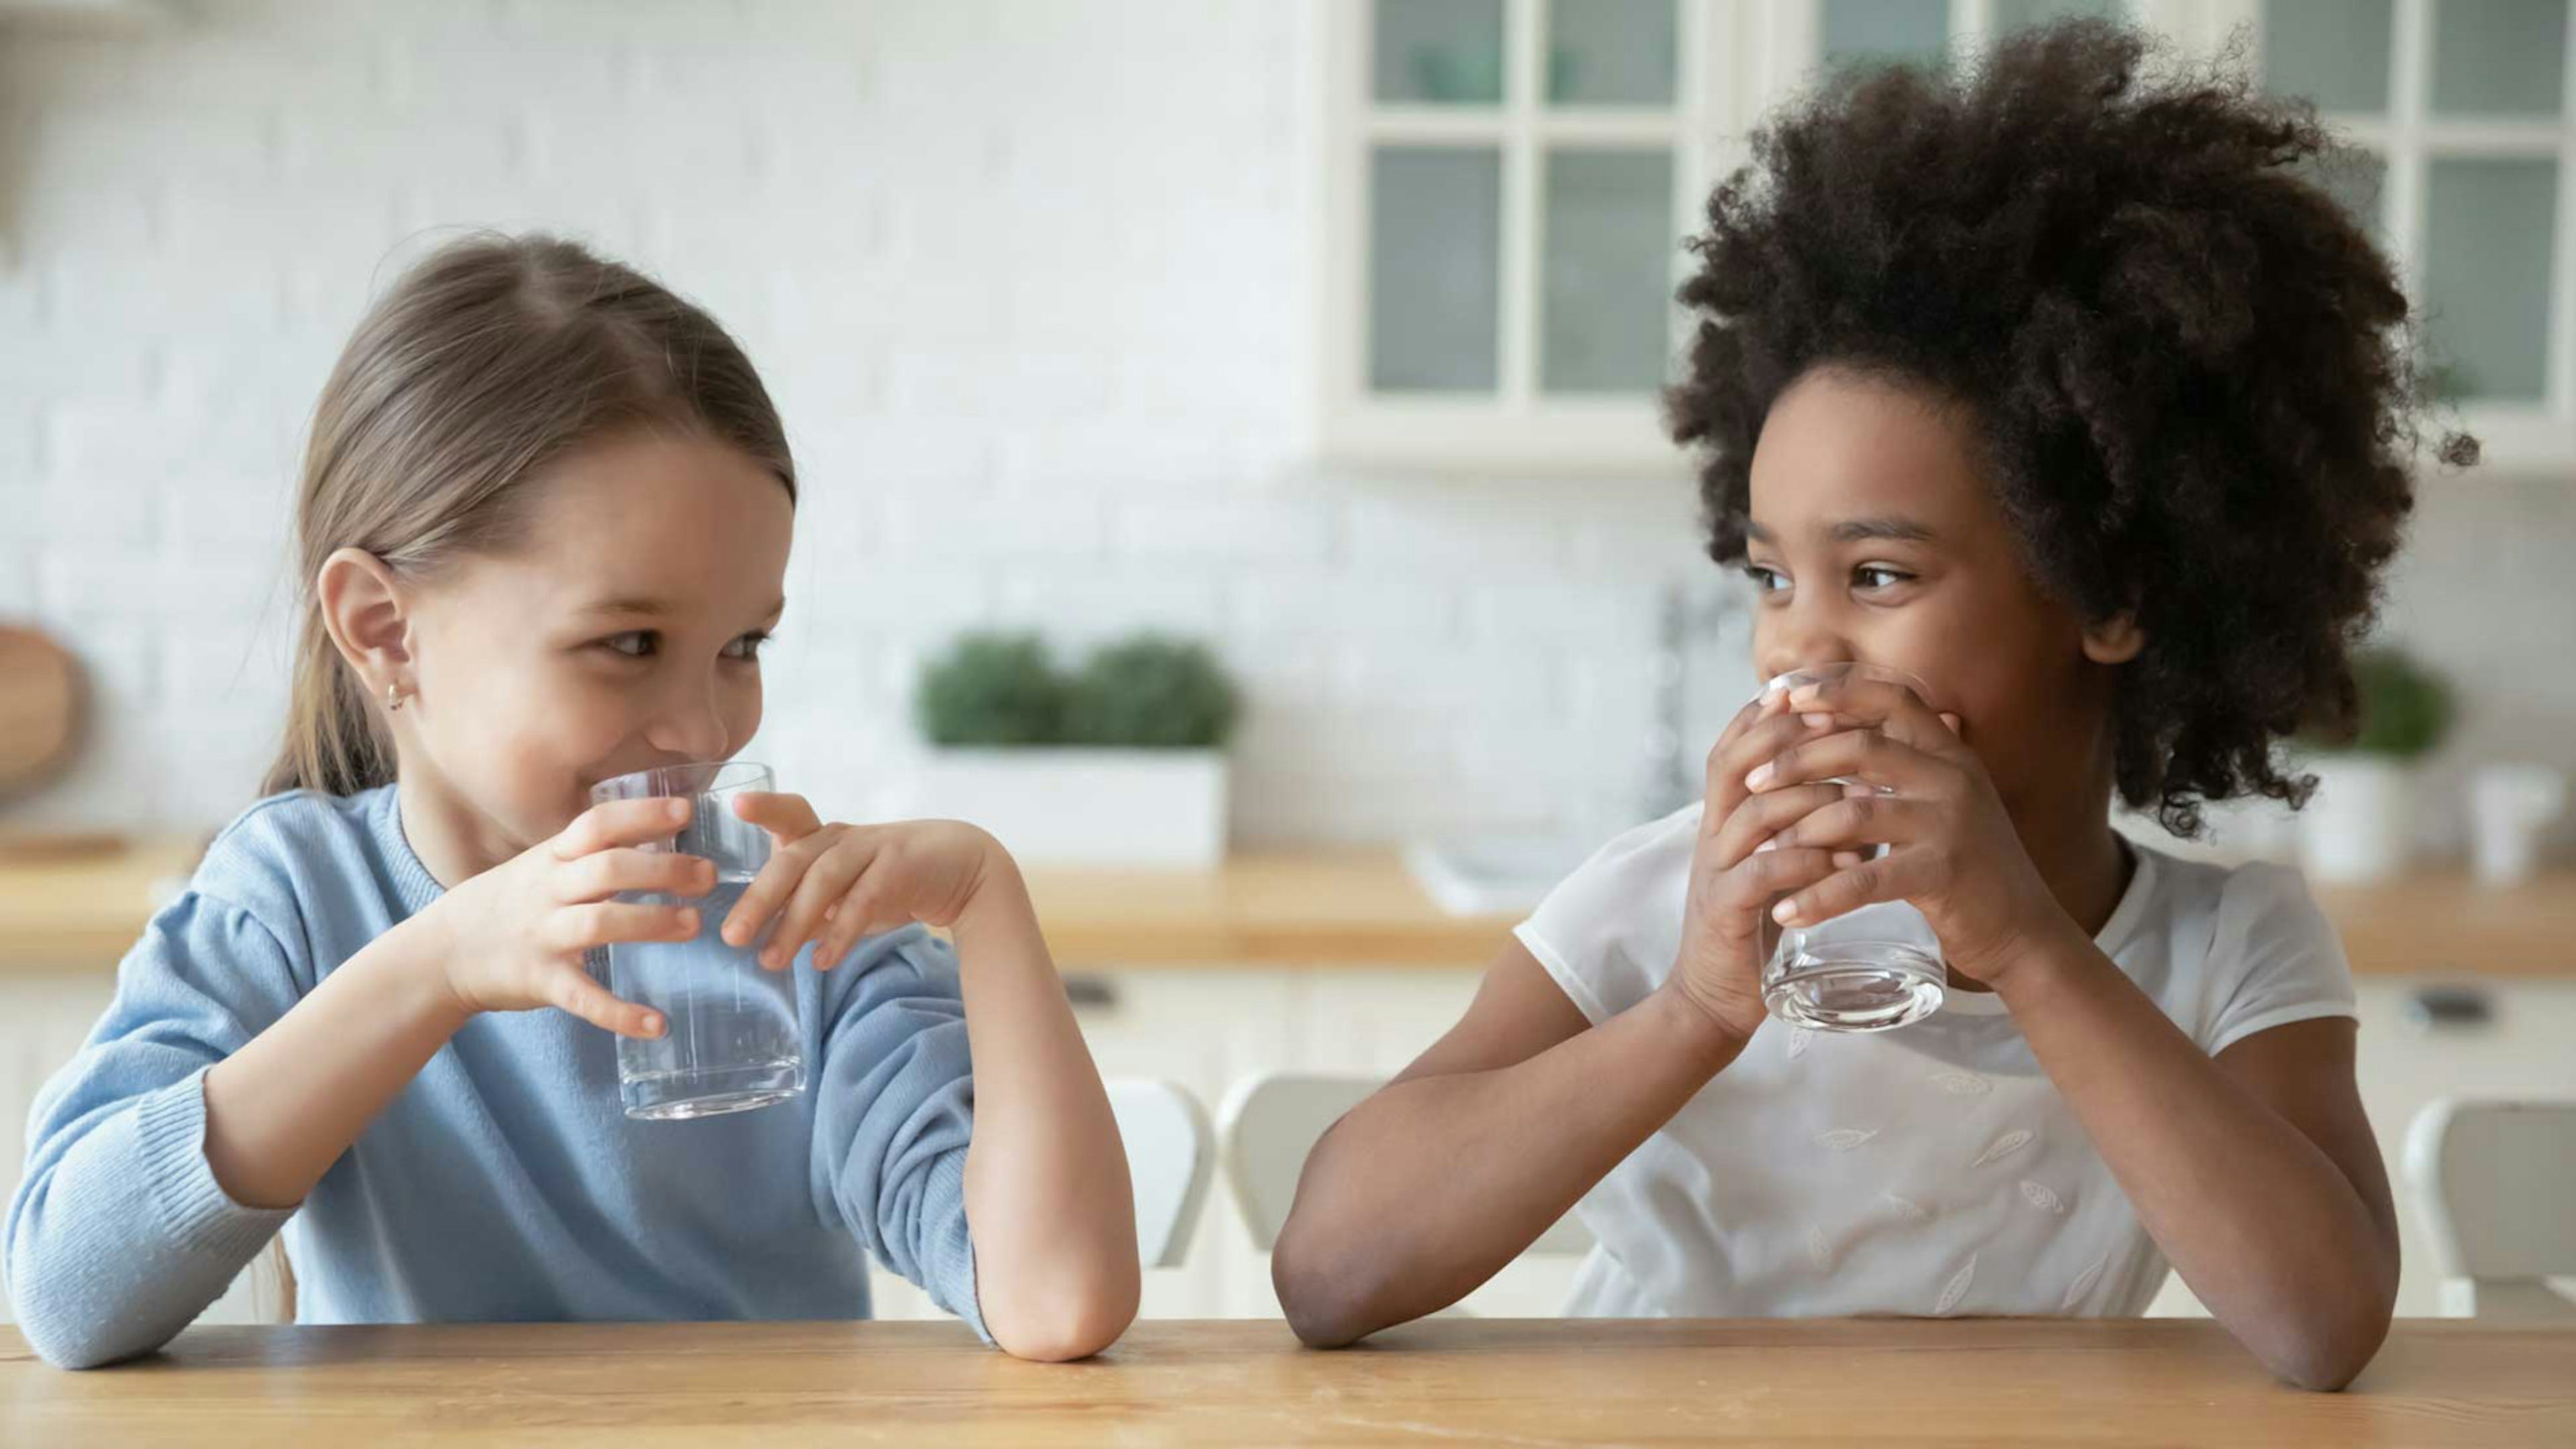 Zwei junge Mädchen sitzen an einem Holztisch und trinken je ein Glas Wasser